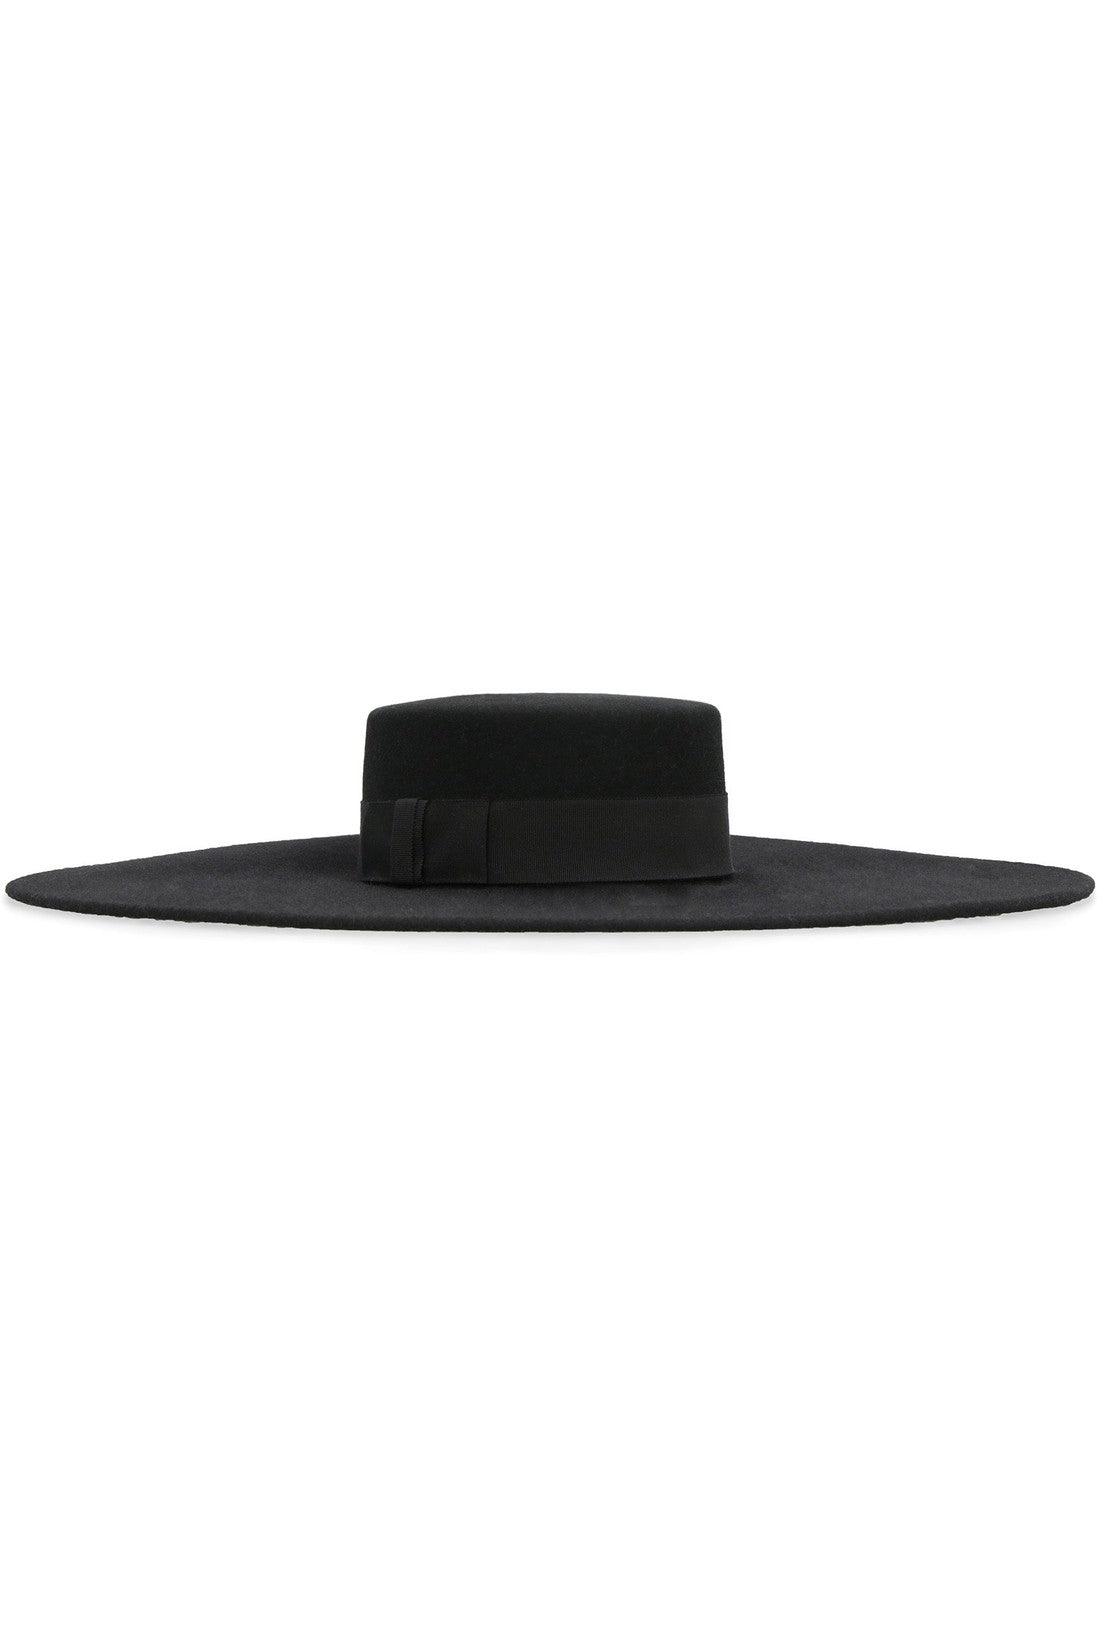 Nina Ricci-OUTLET-SALE-Wide brim hat-ARCHIVIST